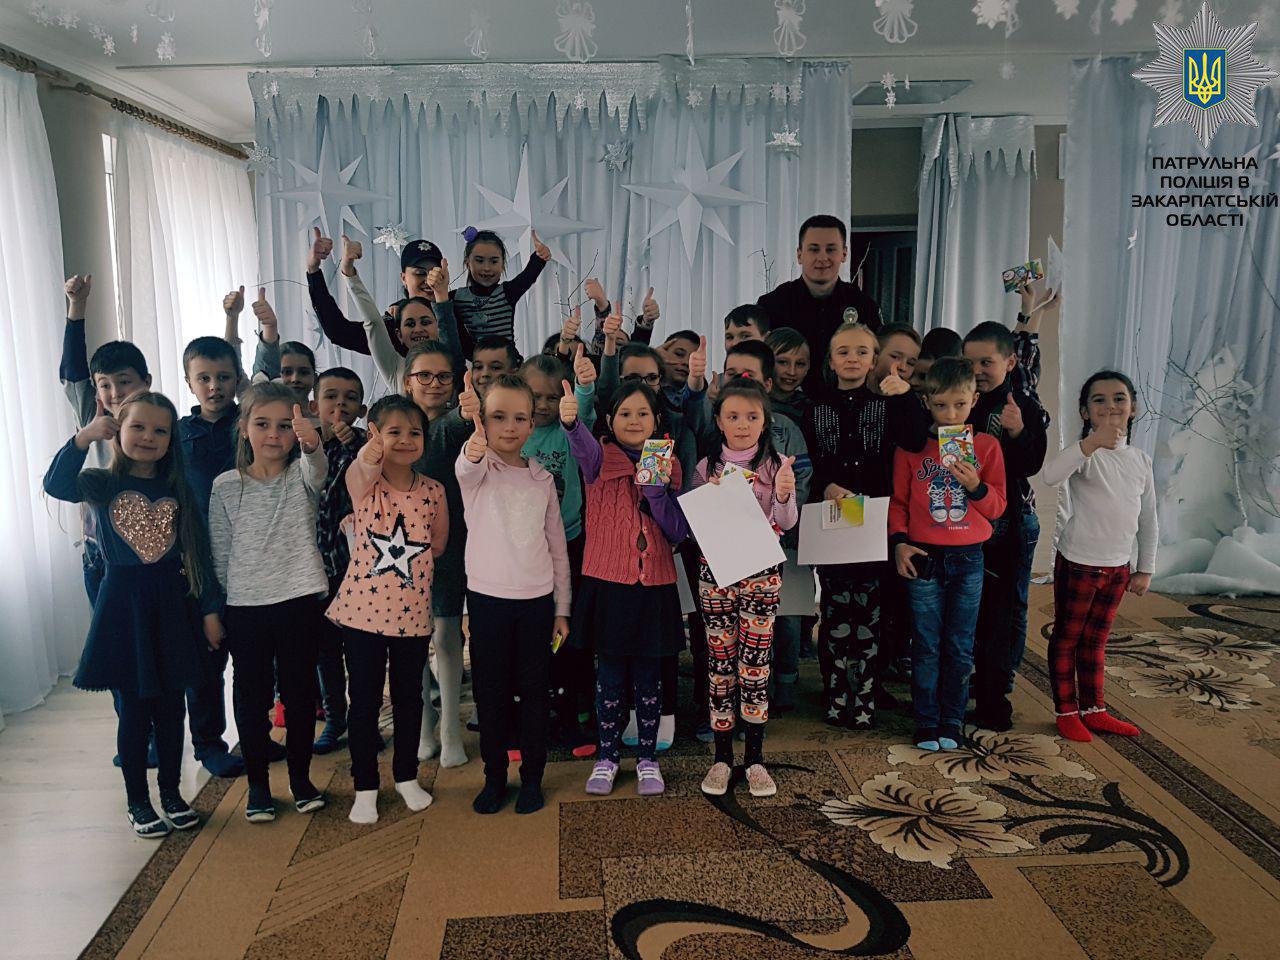 Патрульна поліція Закарпатської області: діти - наше майбутнє, найголовніший скарб суспільства (ФОТО)